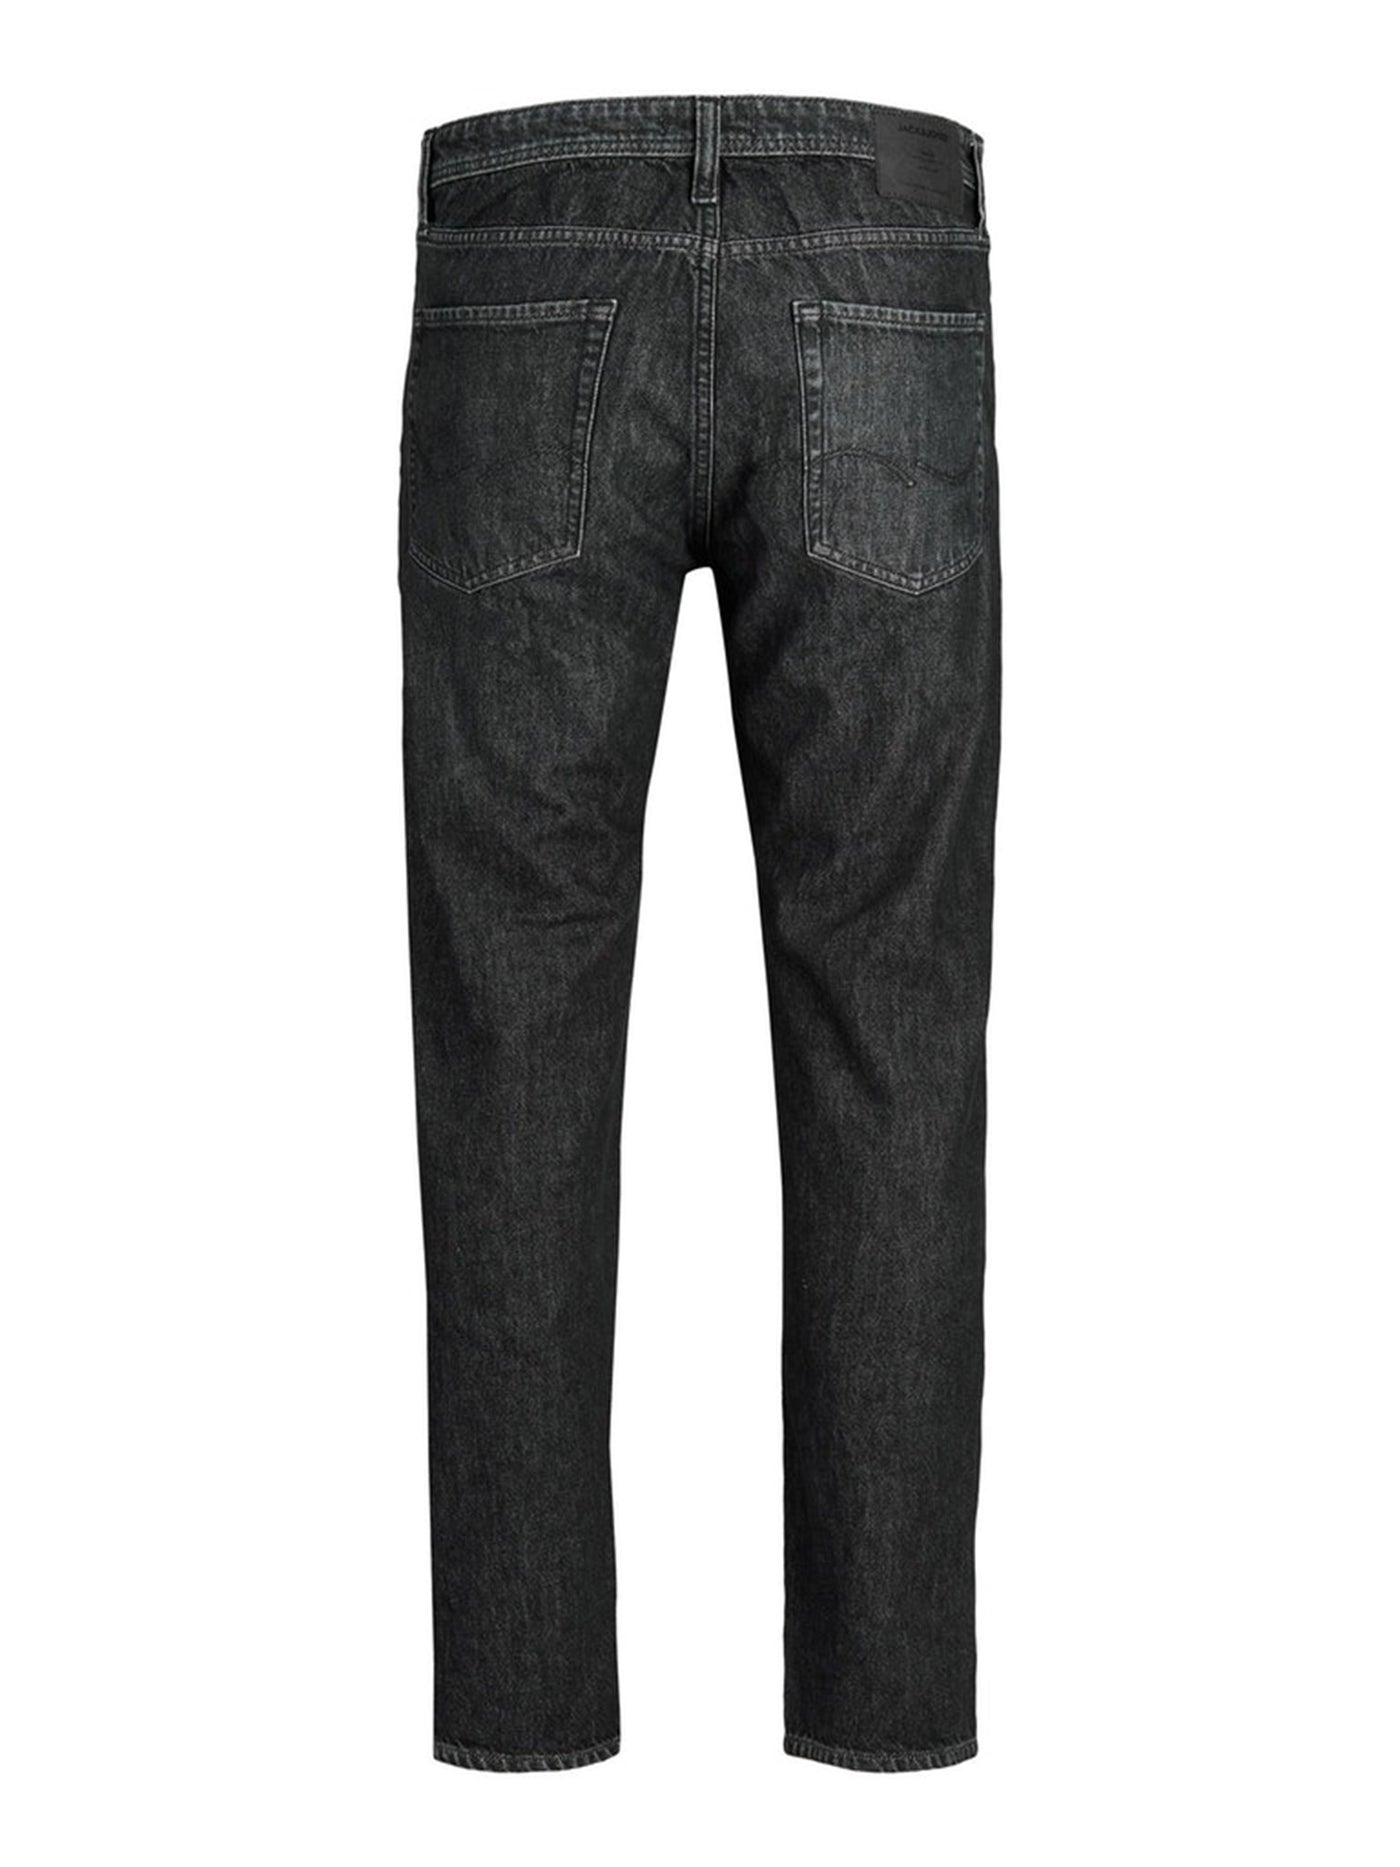 Chris Original Jeans MF993 - Black Denim - Jack & Jones - Svart 7